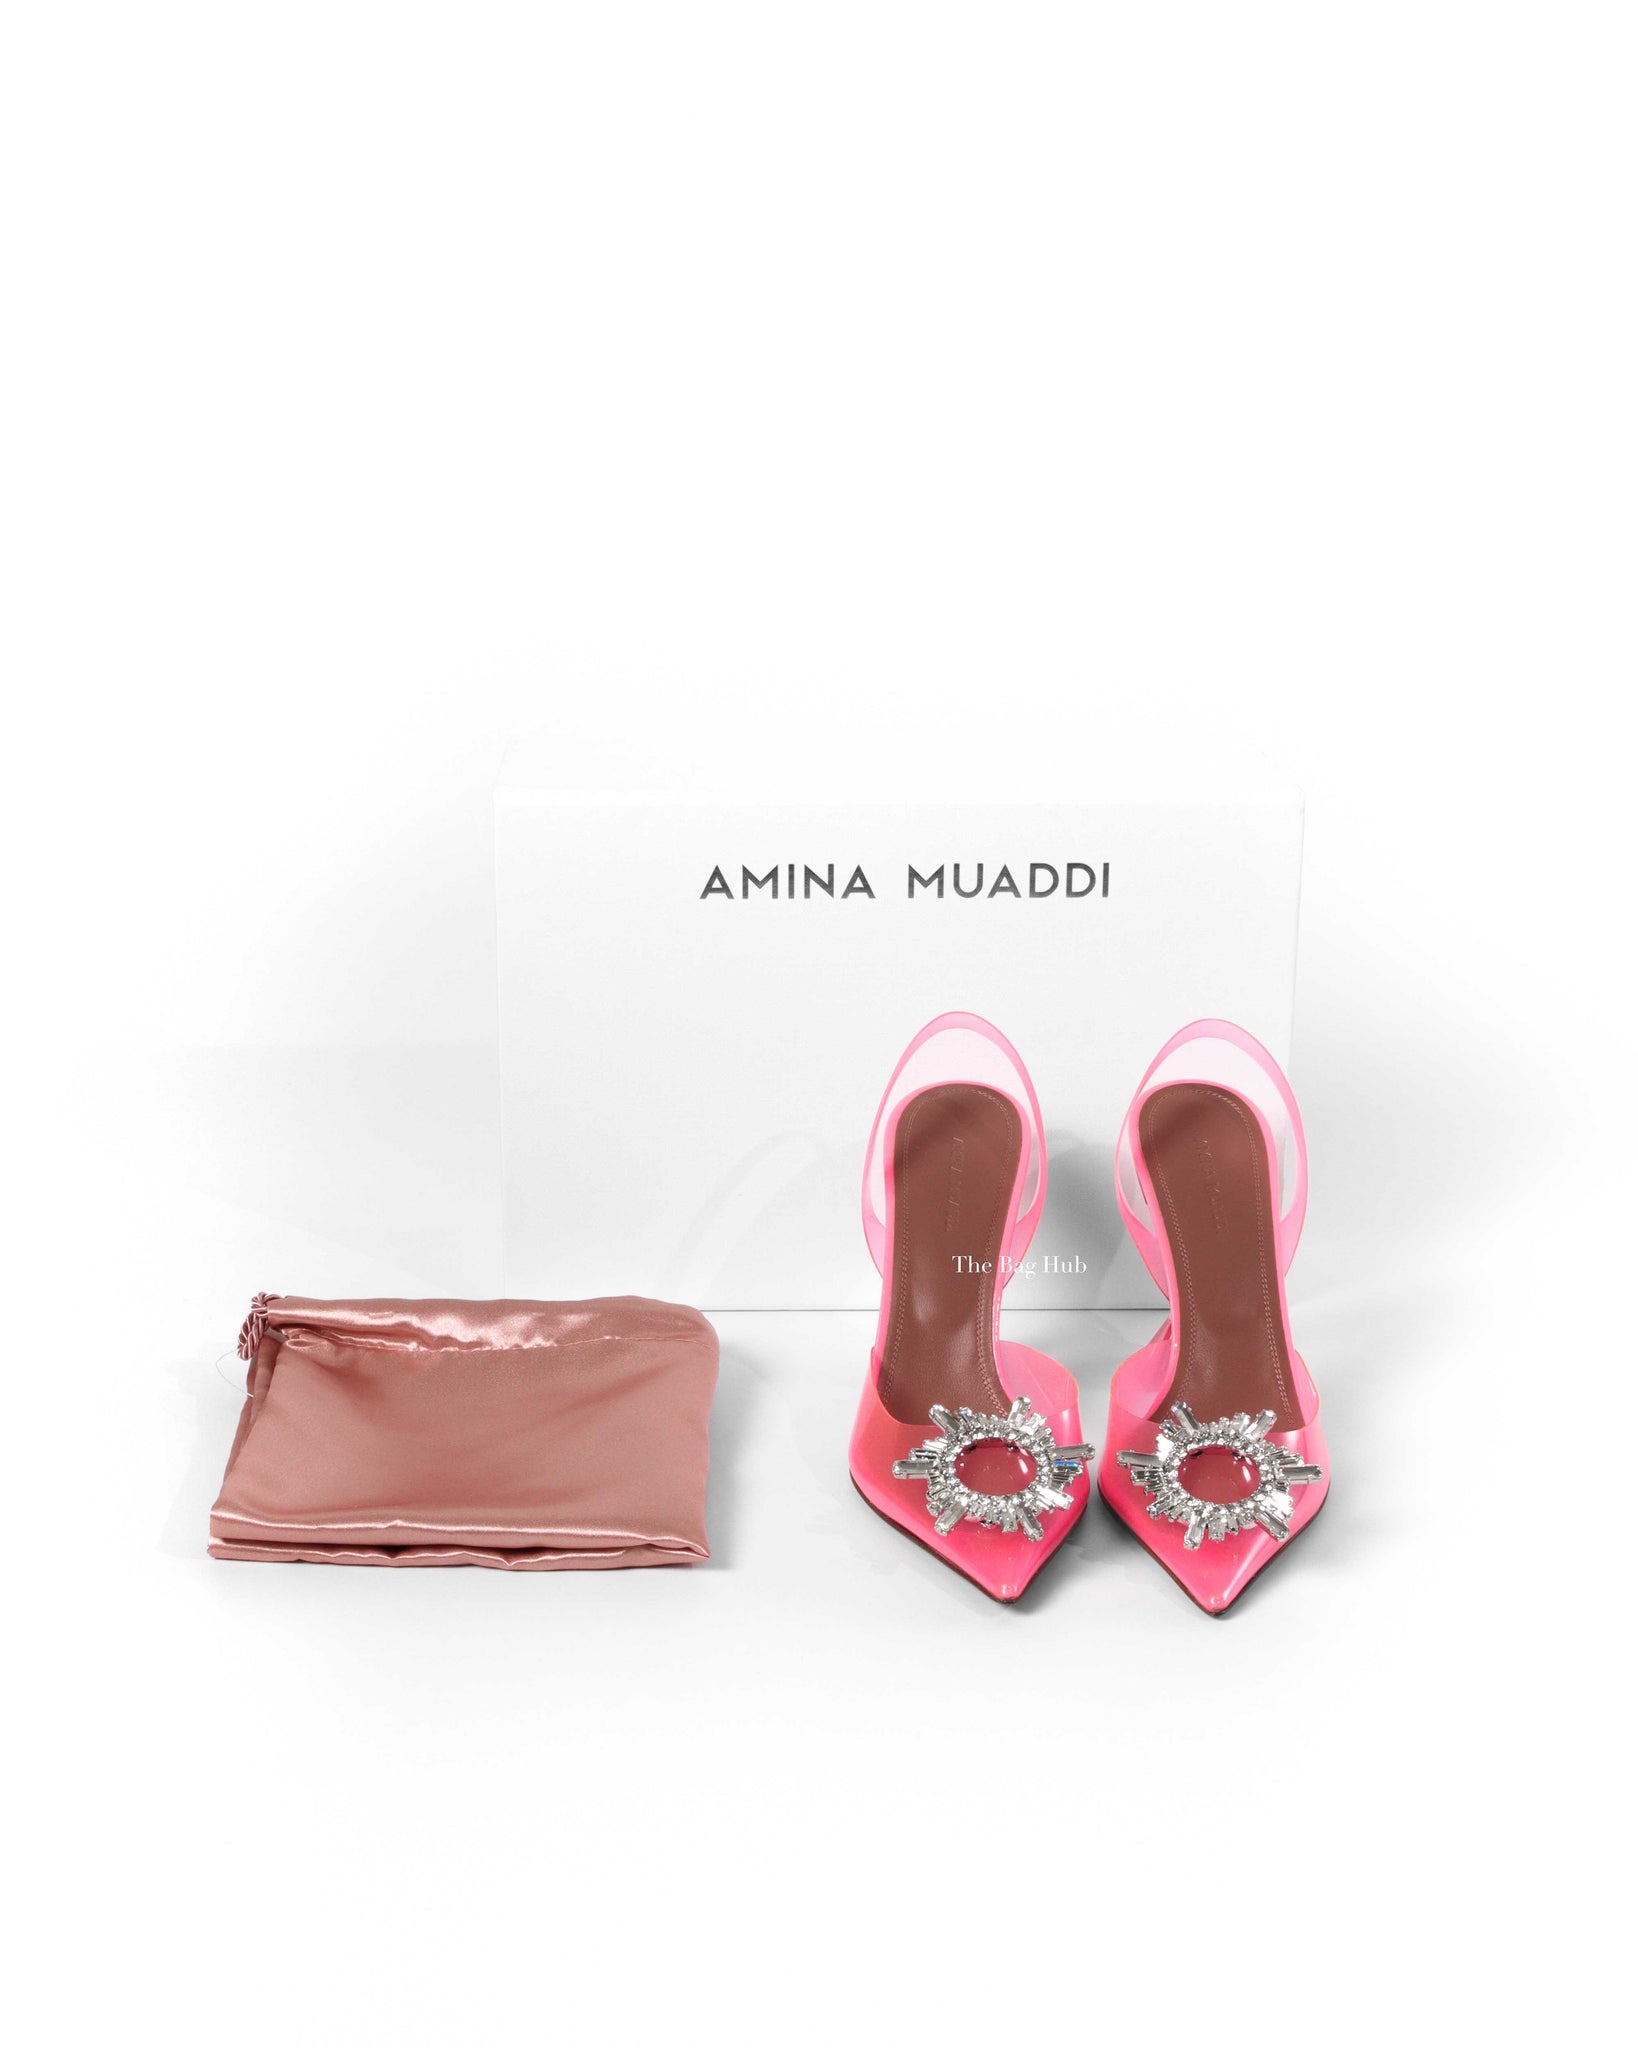 Amina Muaddi Pink Begum 95 Glass Sling Pumps Size 38